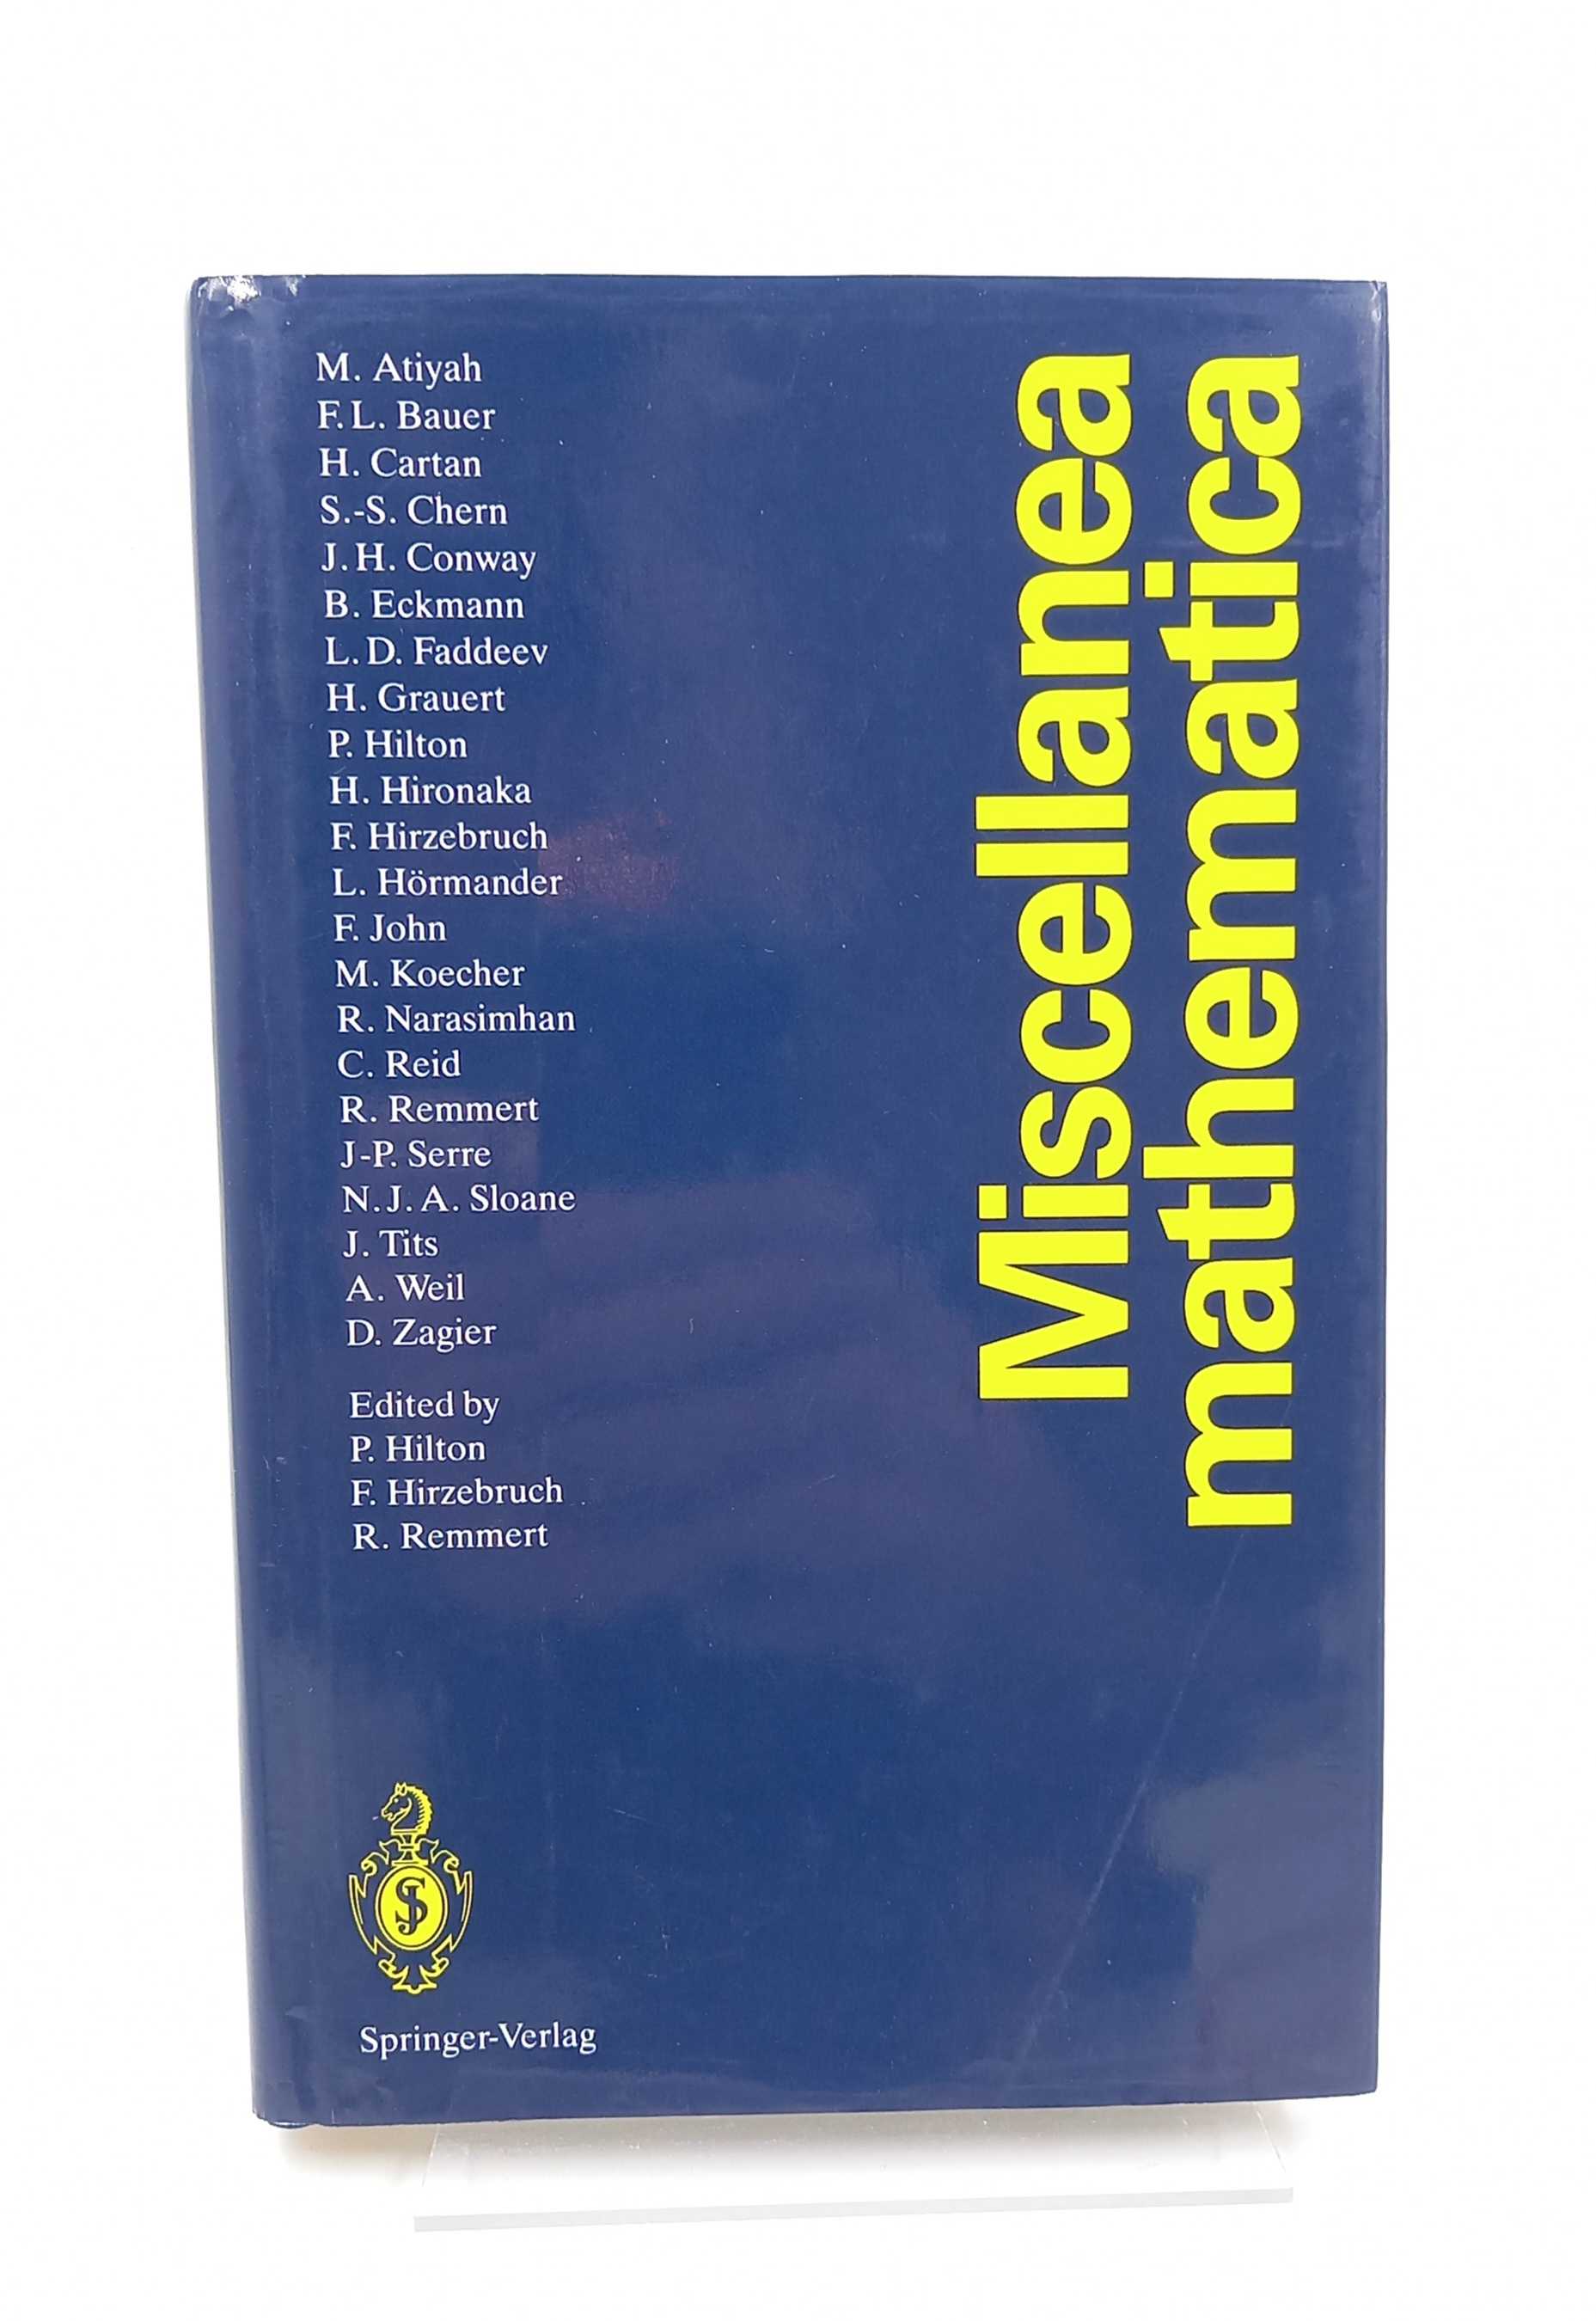 Miscellanea mathematica. Festschrift für Heinz Götze - Hilton, Peter / Reinhold Remmert / Friedrich Hirzebruch (Edd.) / M. Atiyah u.a.